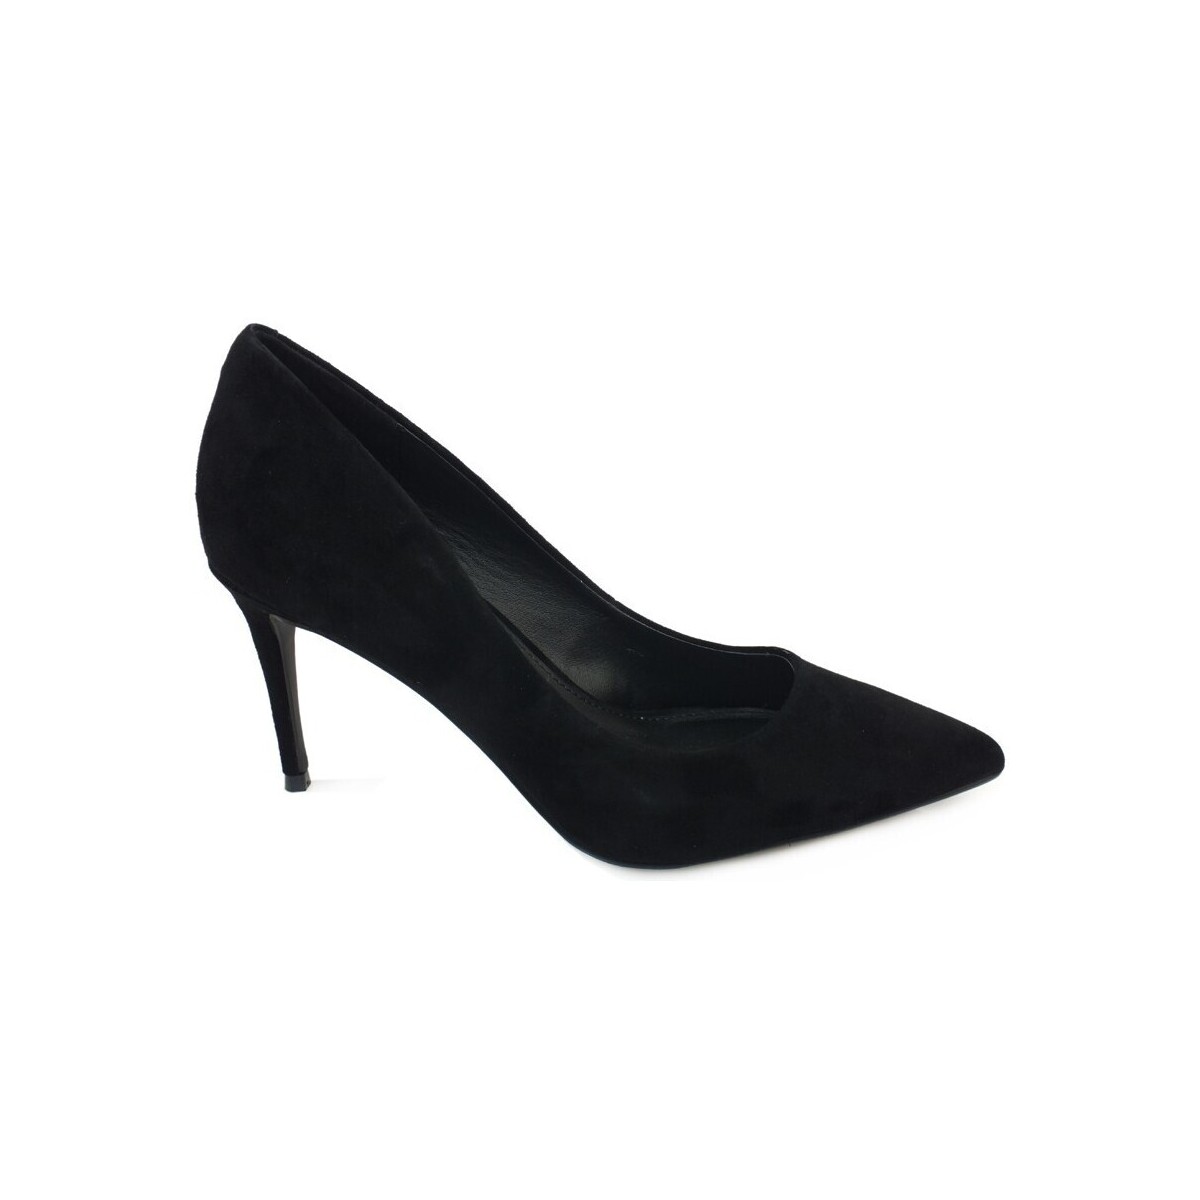 Chaussures Femme Bottes Steve Madden Lillie Black LILL02S1 Noir